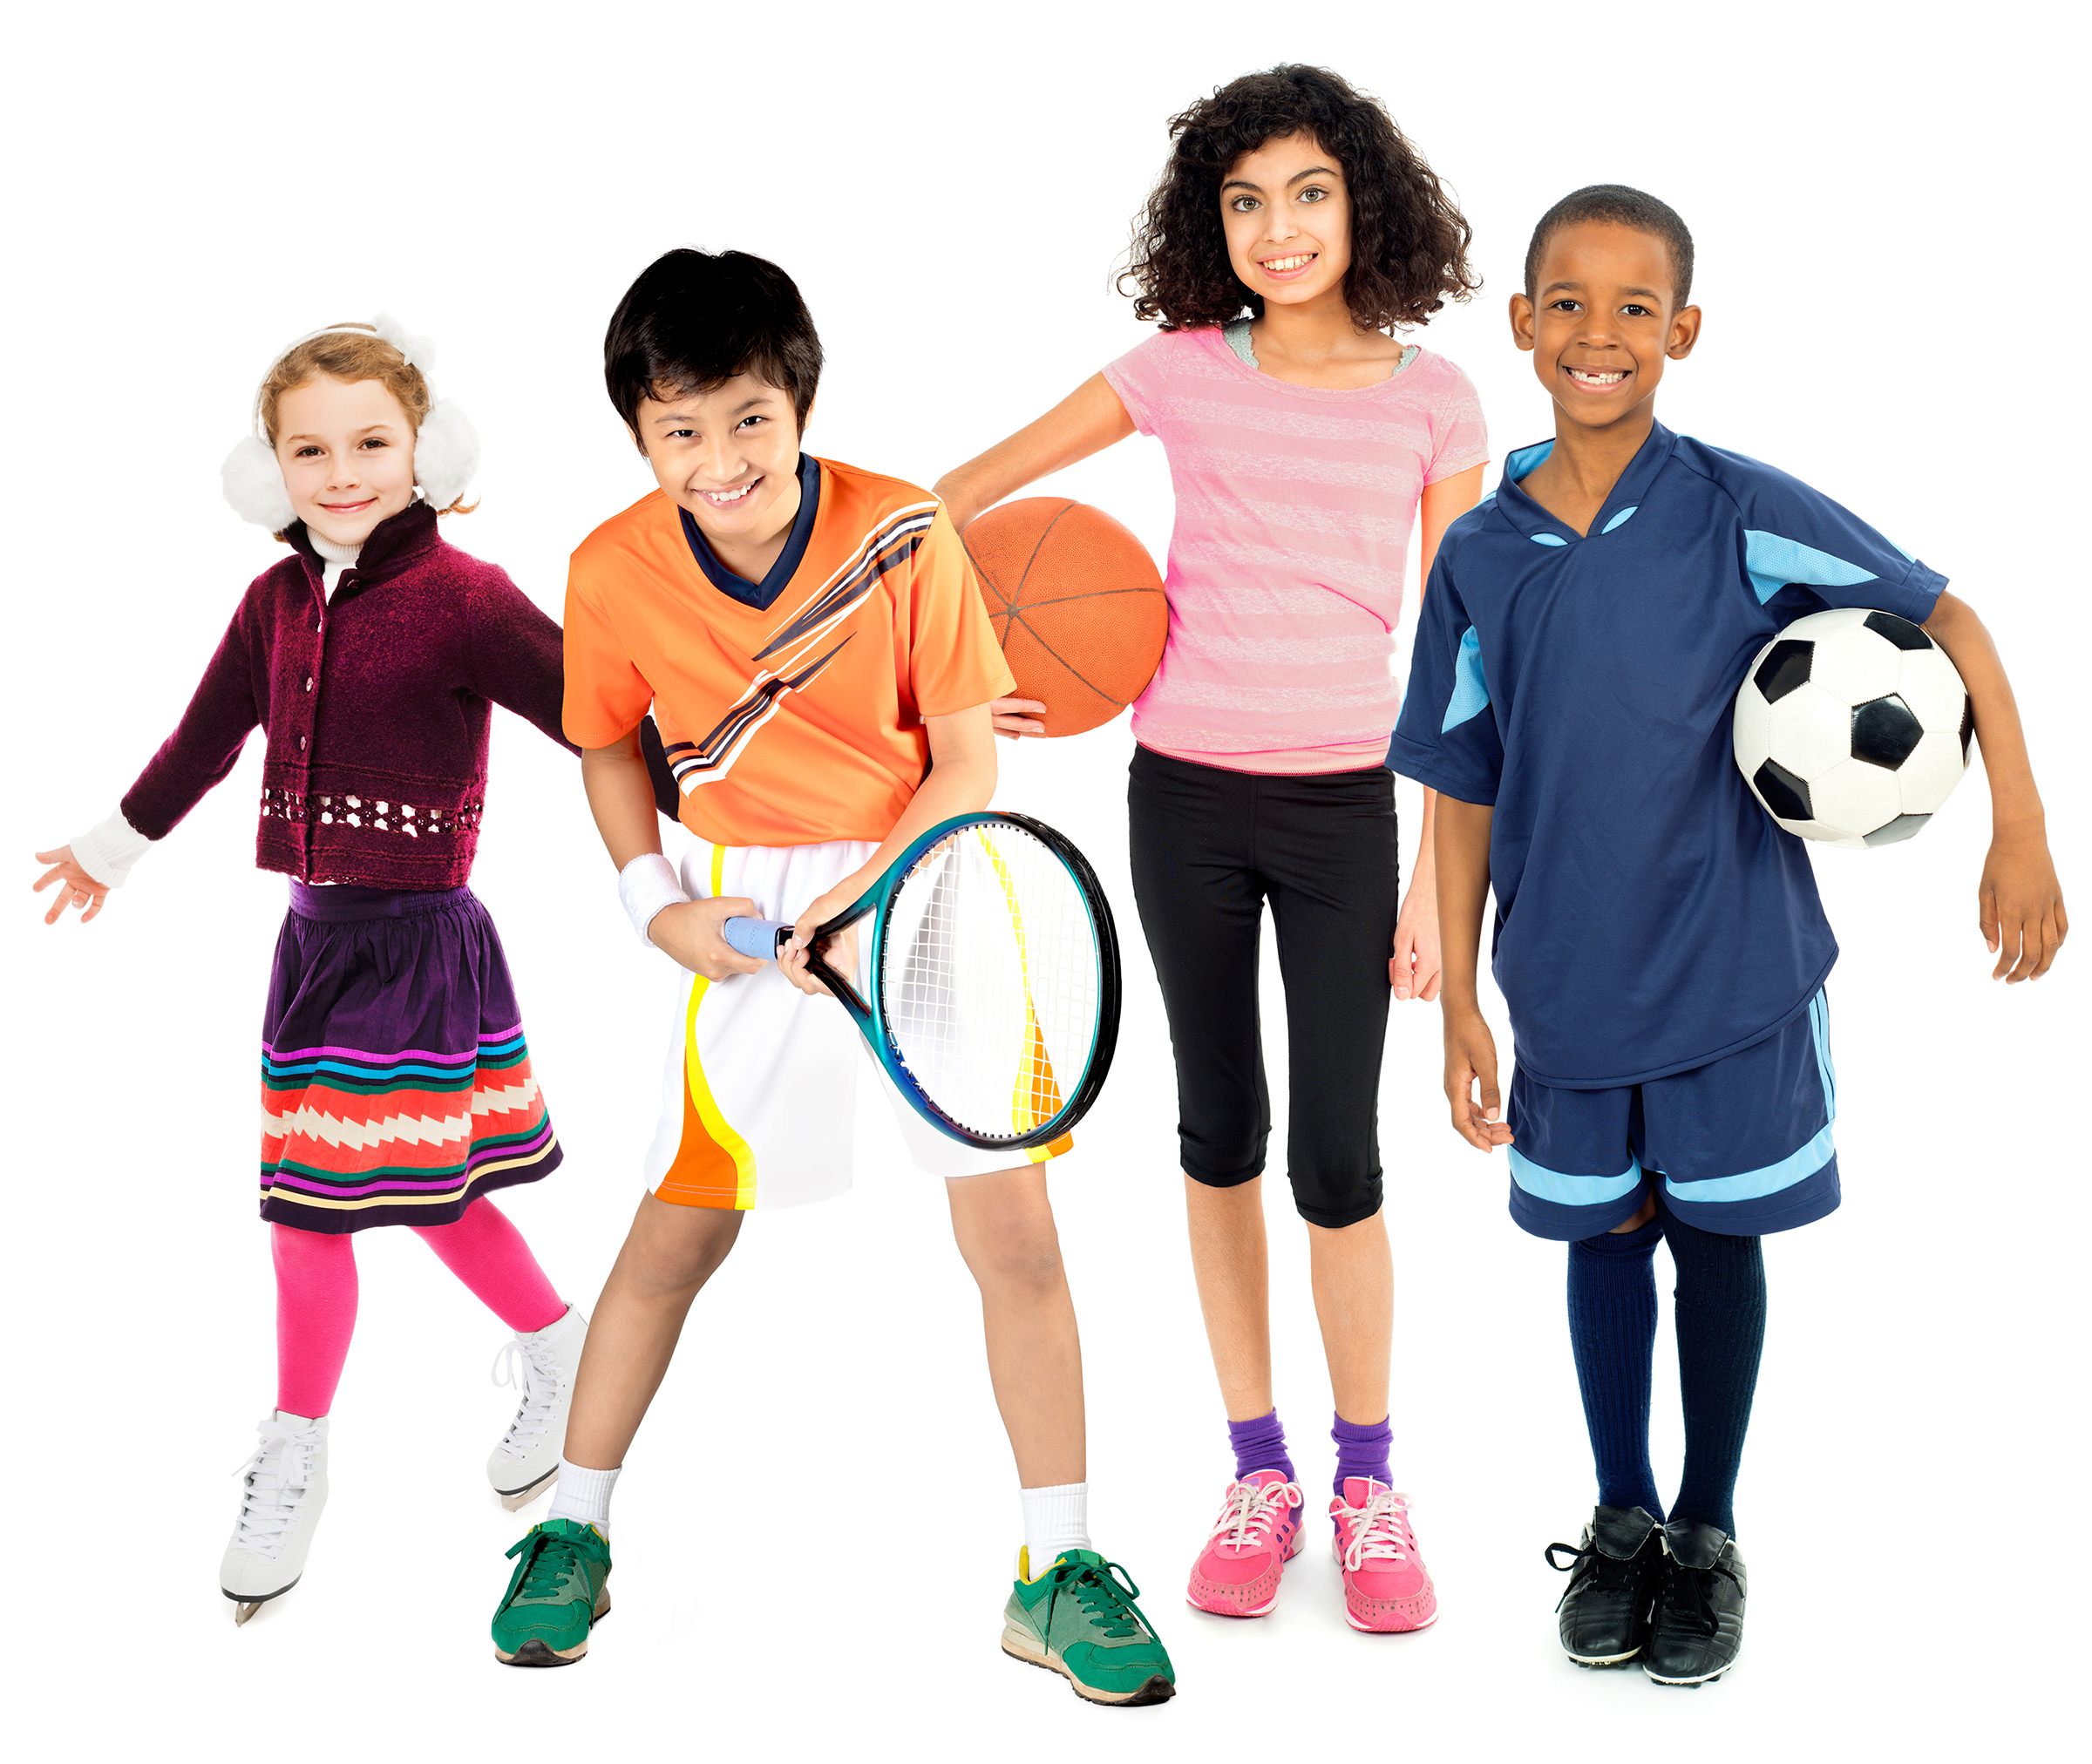 Children do sports